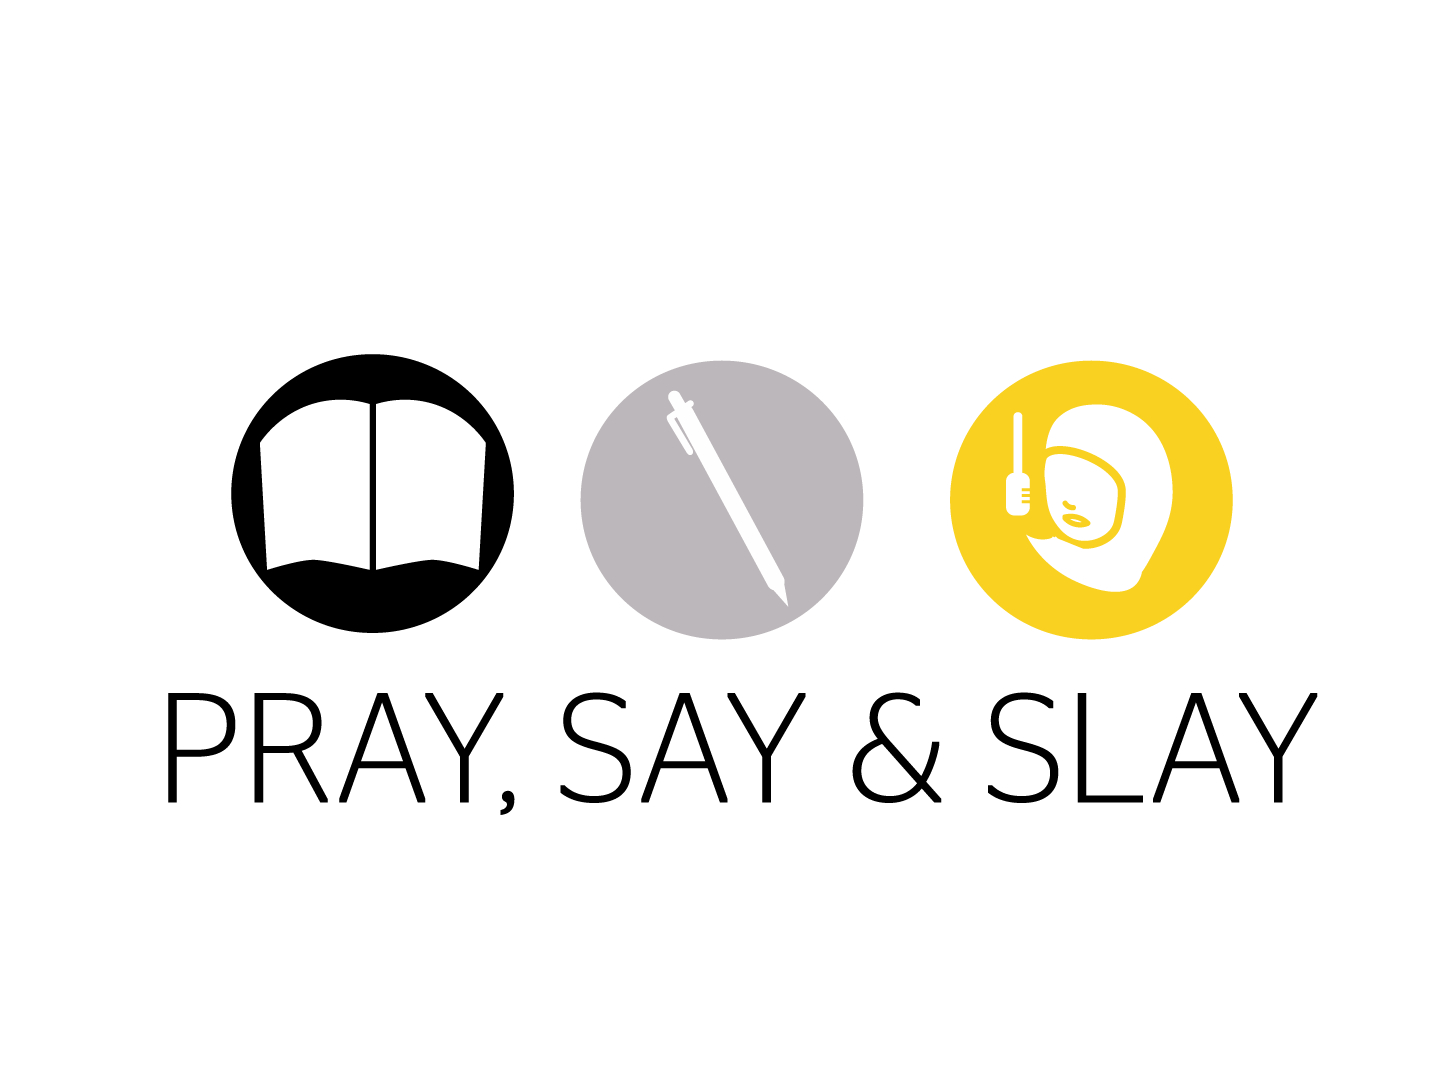 Slay Logo - Pray Say Slay Logo by Sana Shah on Dribbble